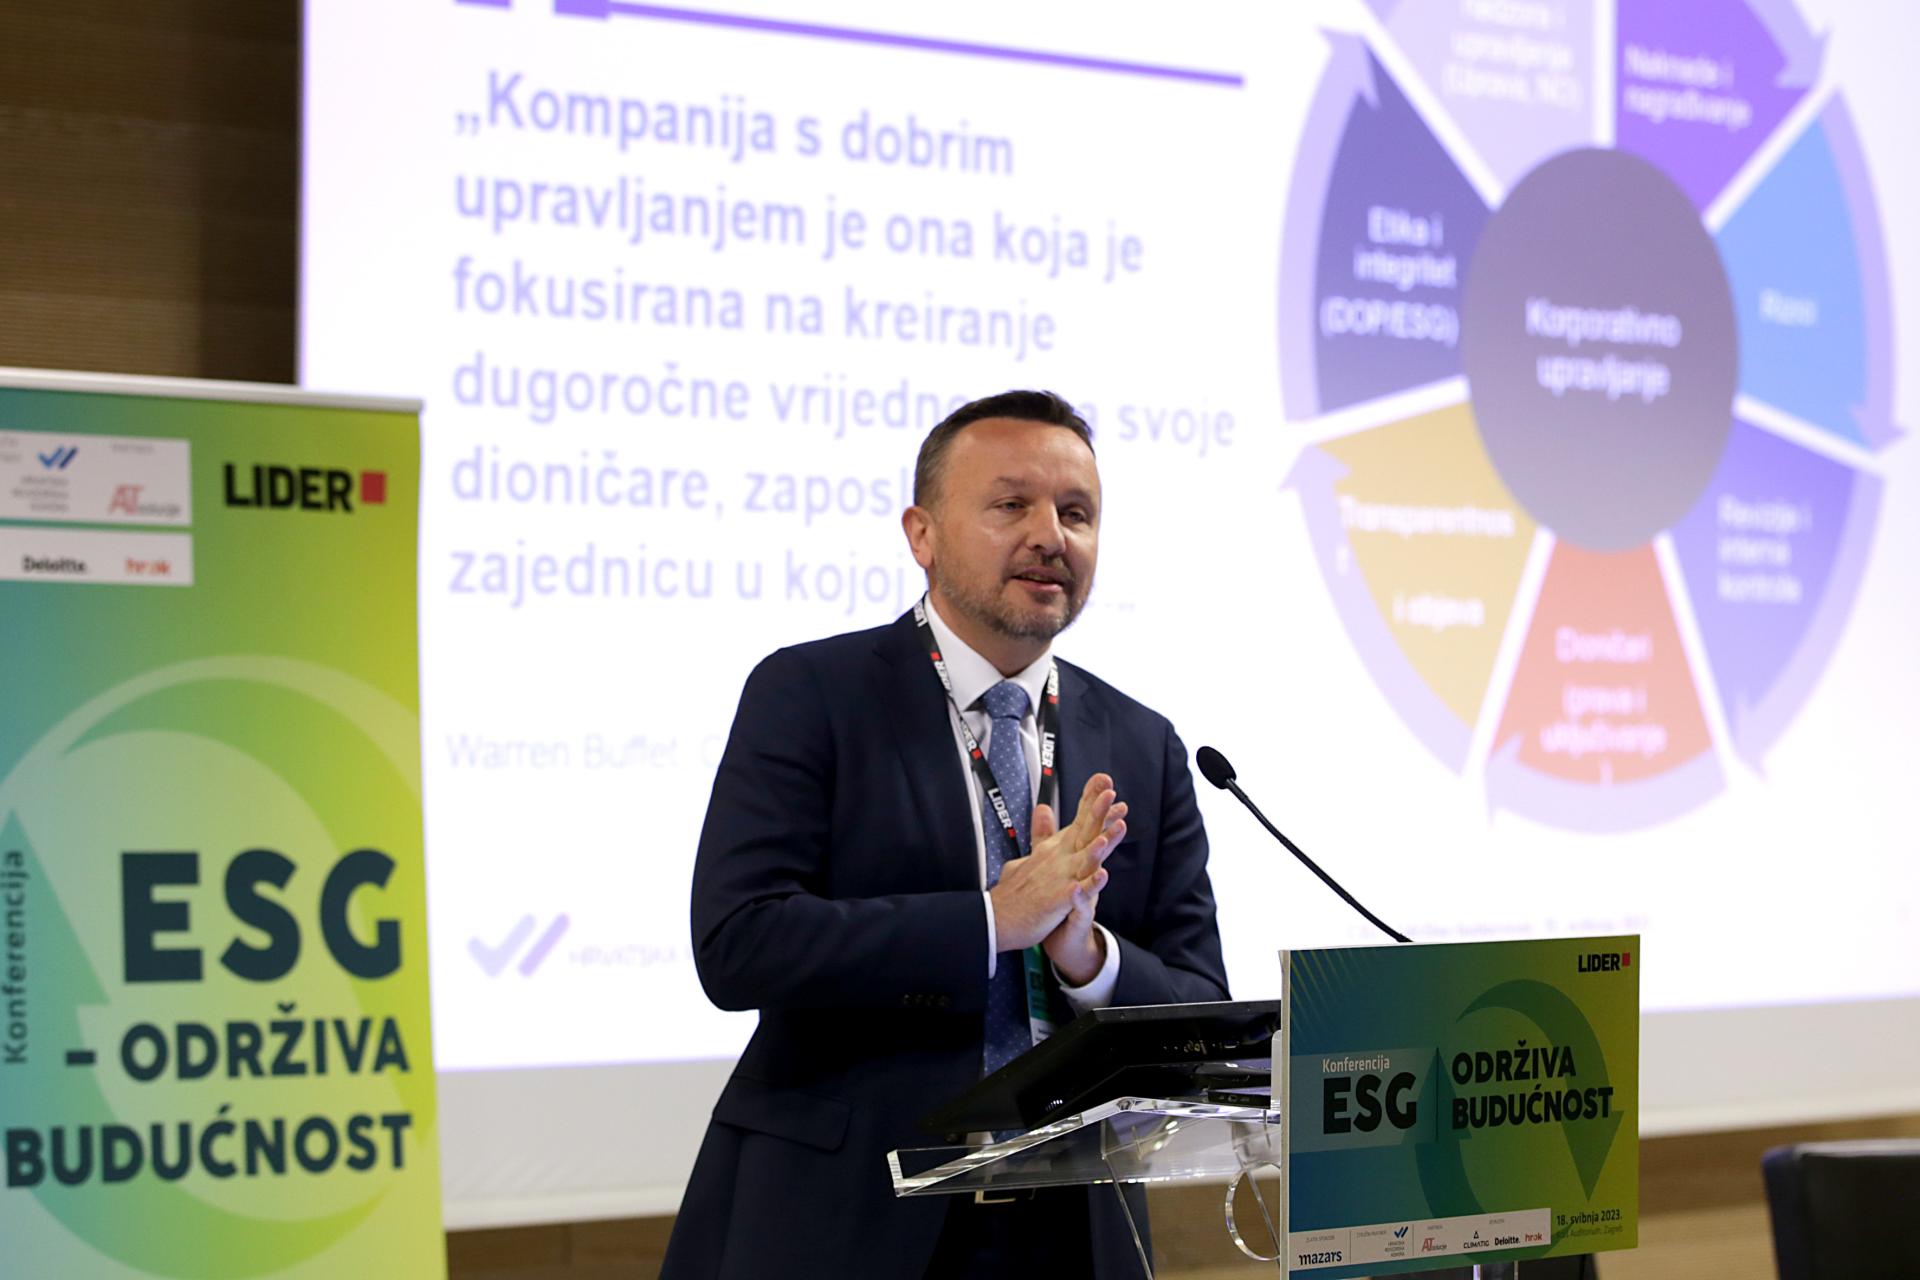 Berislav Horvat: Ako uprave i nadzorni odbori ne prihvate važnost ESG-a, nećemo imati ništa